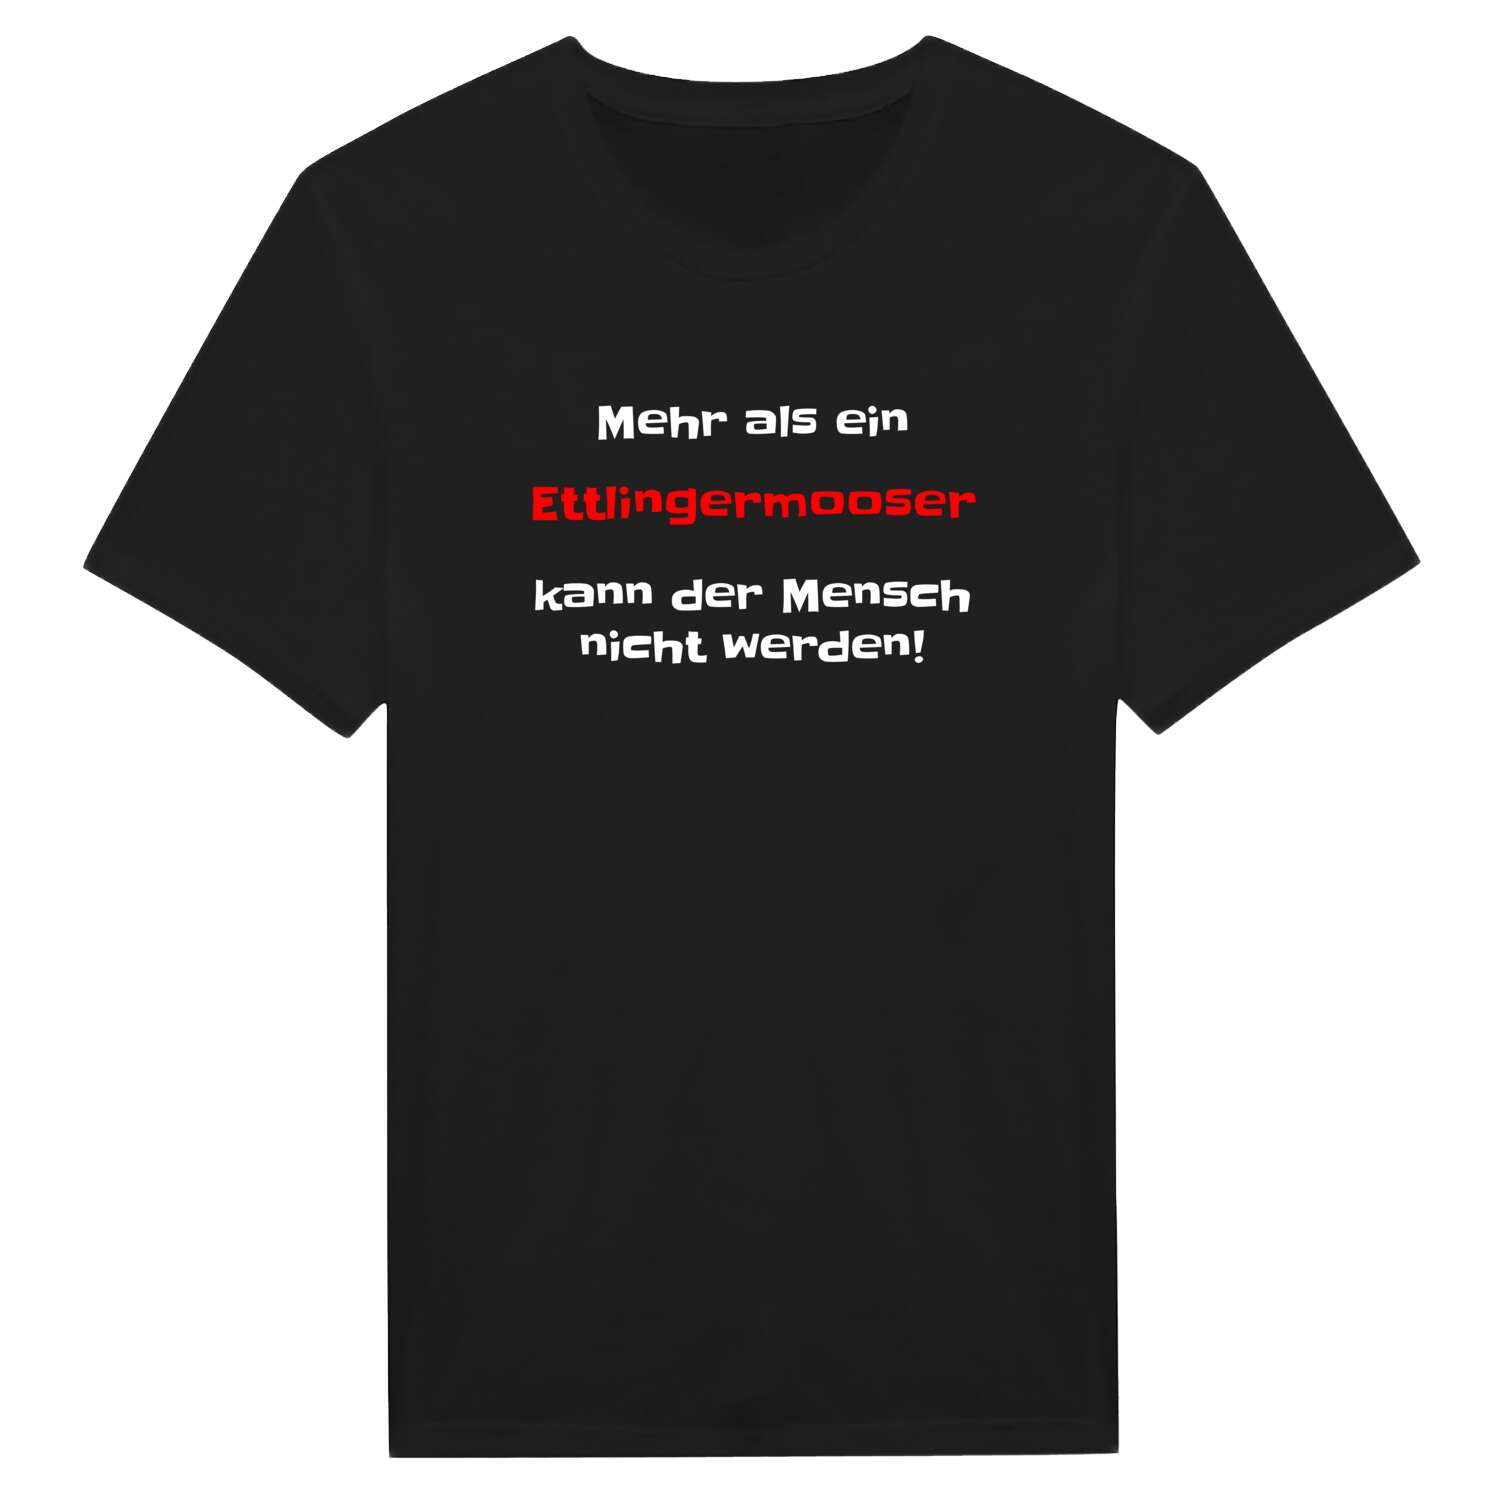 Ettlingermoos T-Shirt »Mehr als ein«